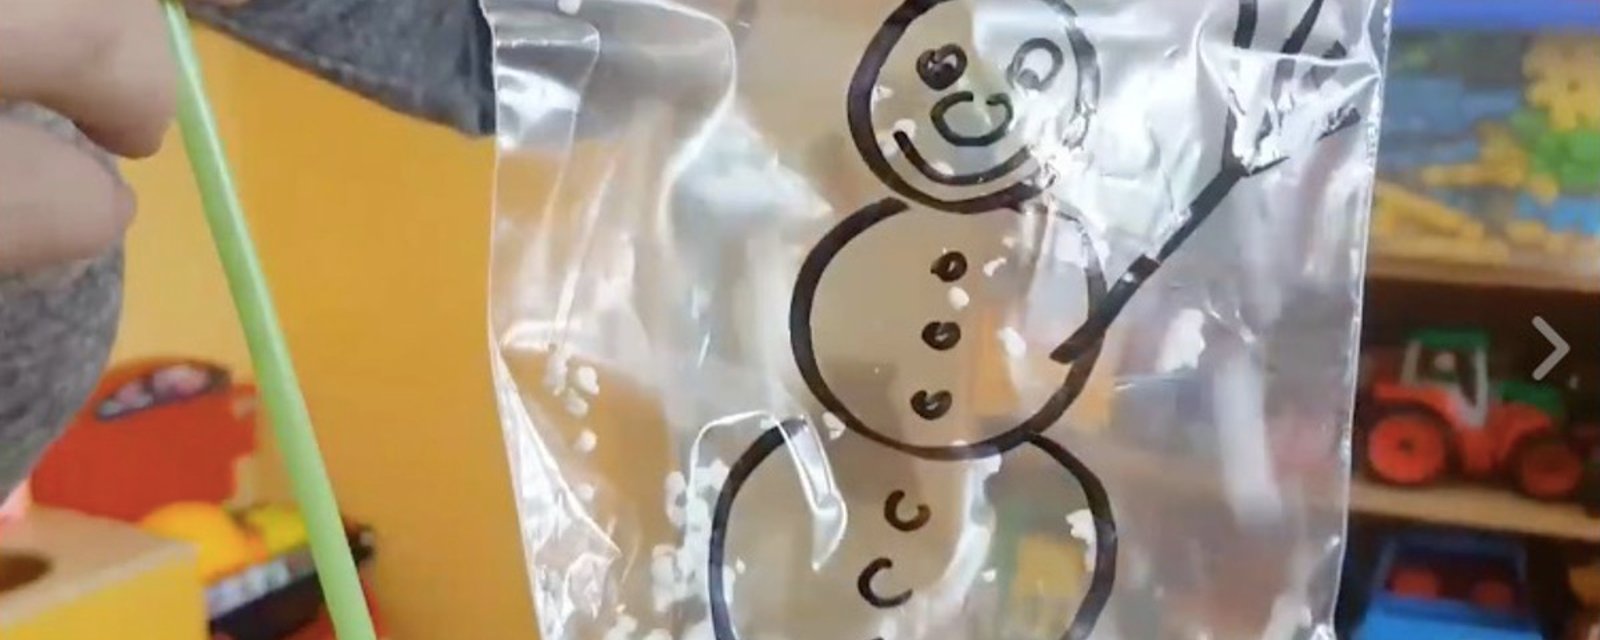 Bricolez de magnifiques bonshommes de neige avec les enfants, à partir de sacs Ziploc! Une idée amusante! 